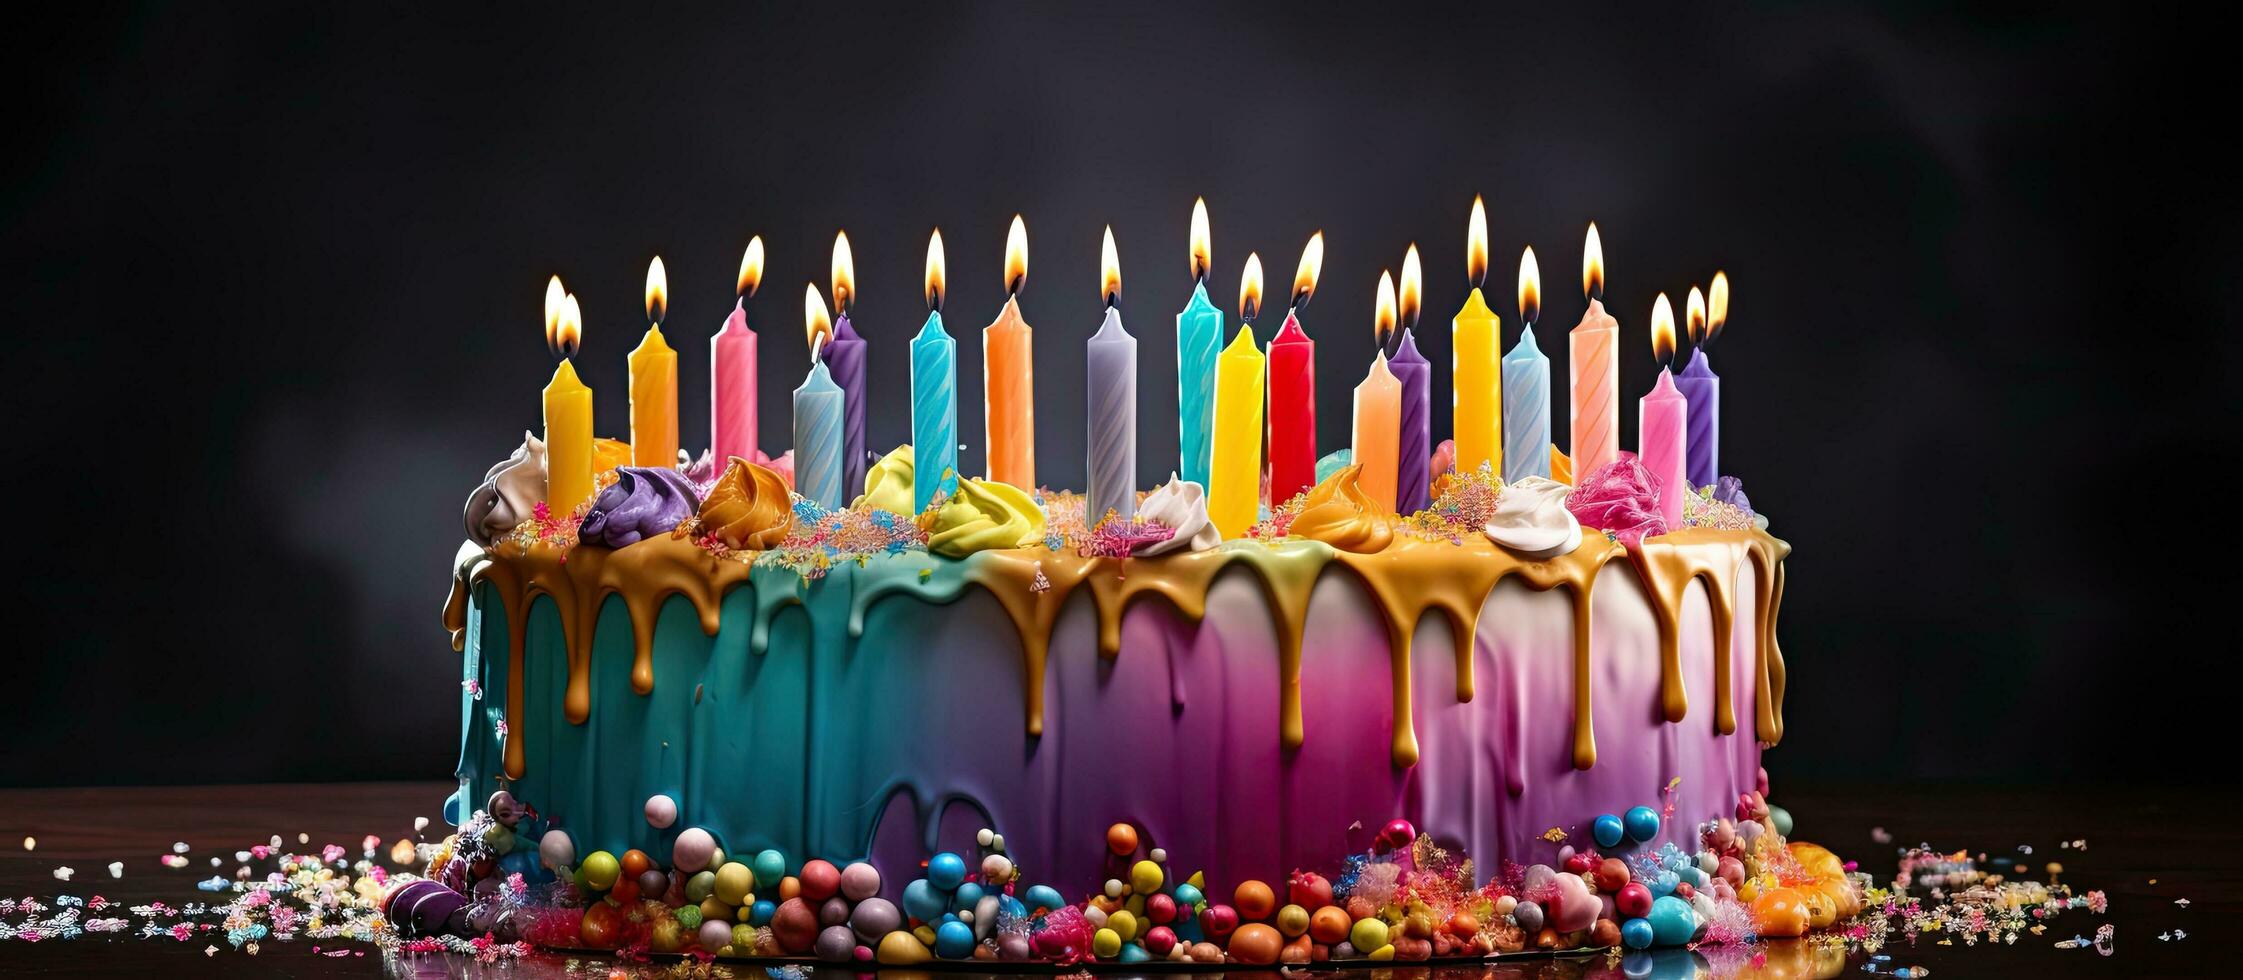 arco Iris aniversário bolo adornado com velas dentro vários cores e decorativo gelo gotejamento baixa foto